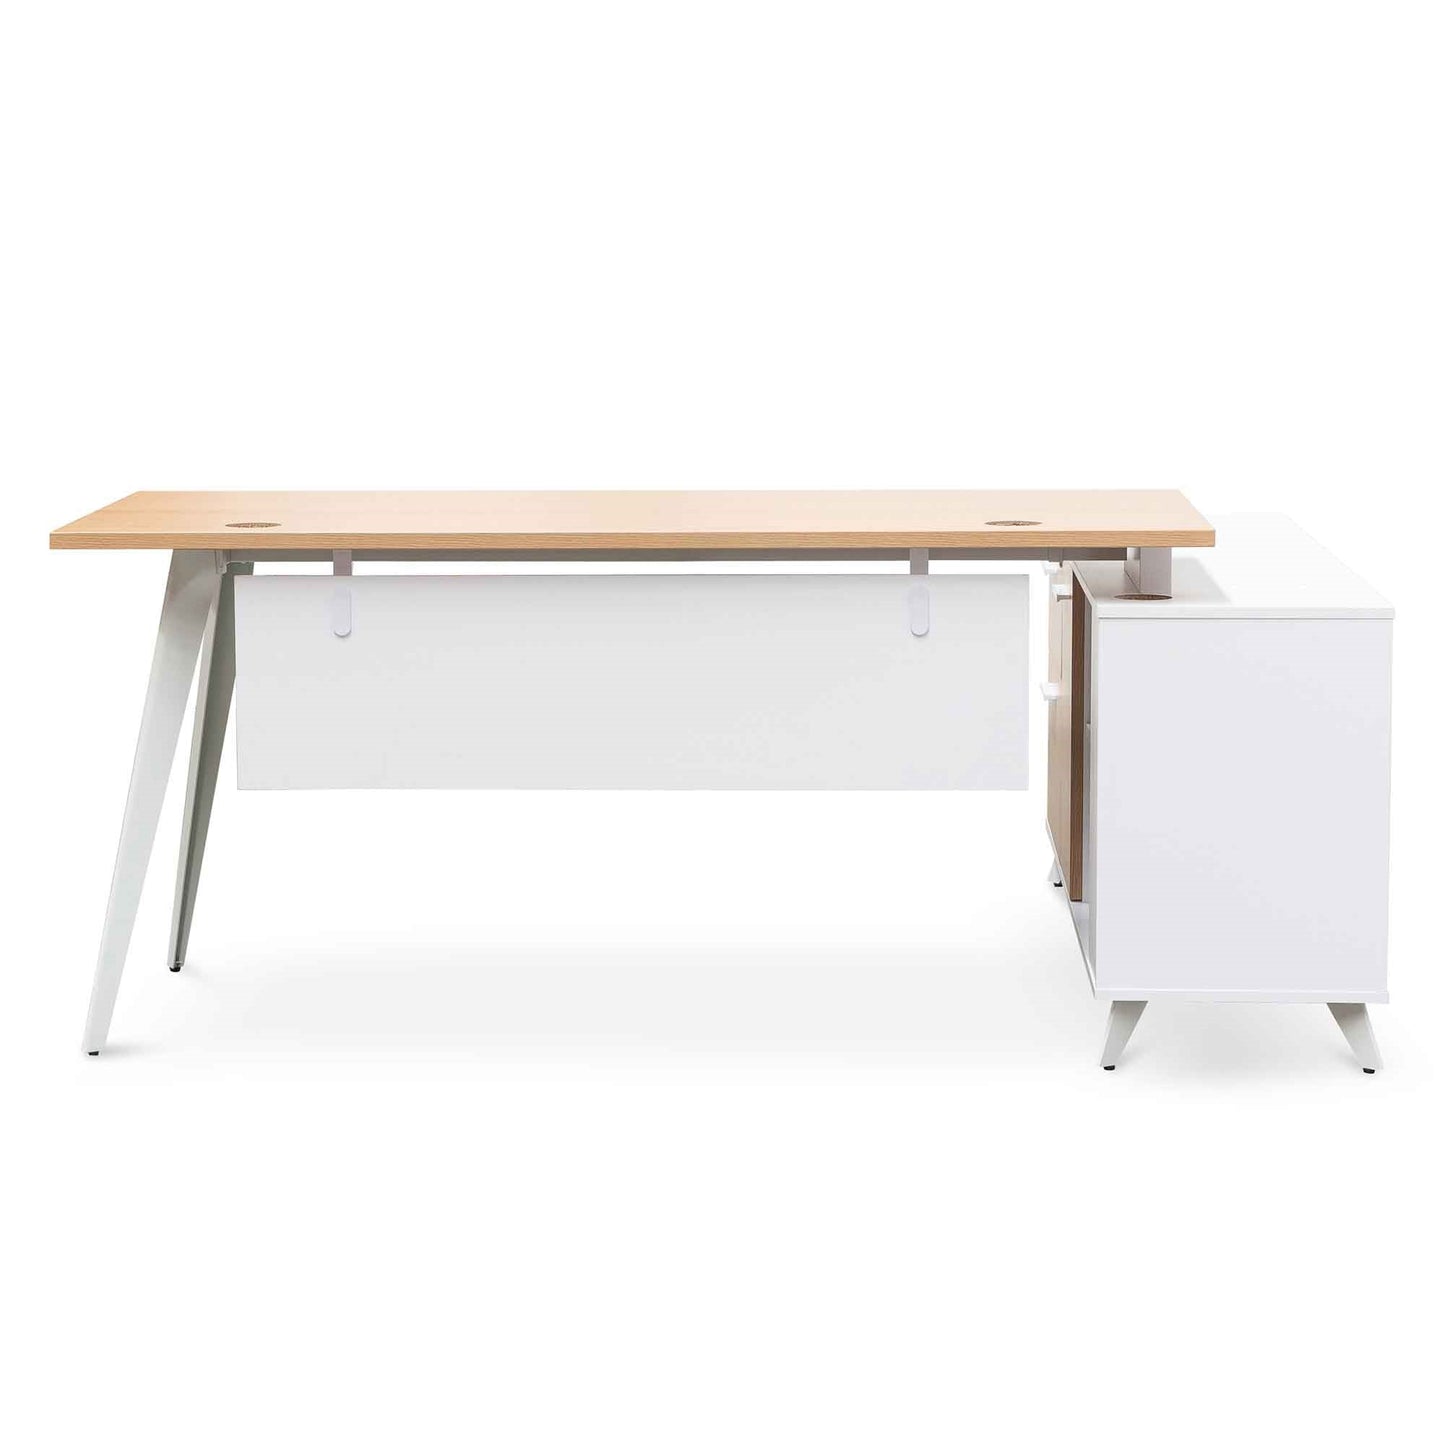 1.6m Left Return Executive Office Desk - Natural-Office Desks-Calibre-Prime Furniture